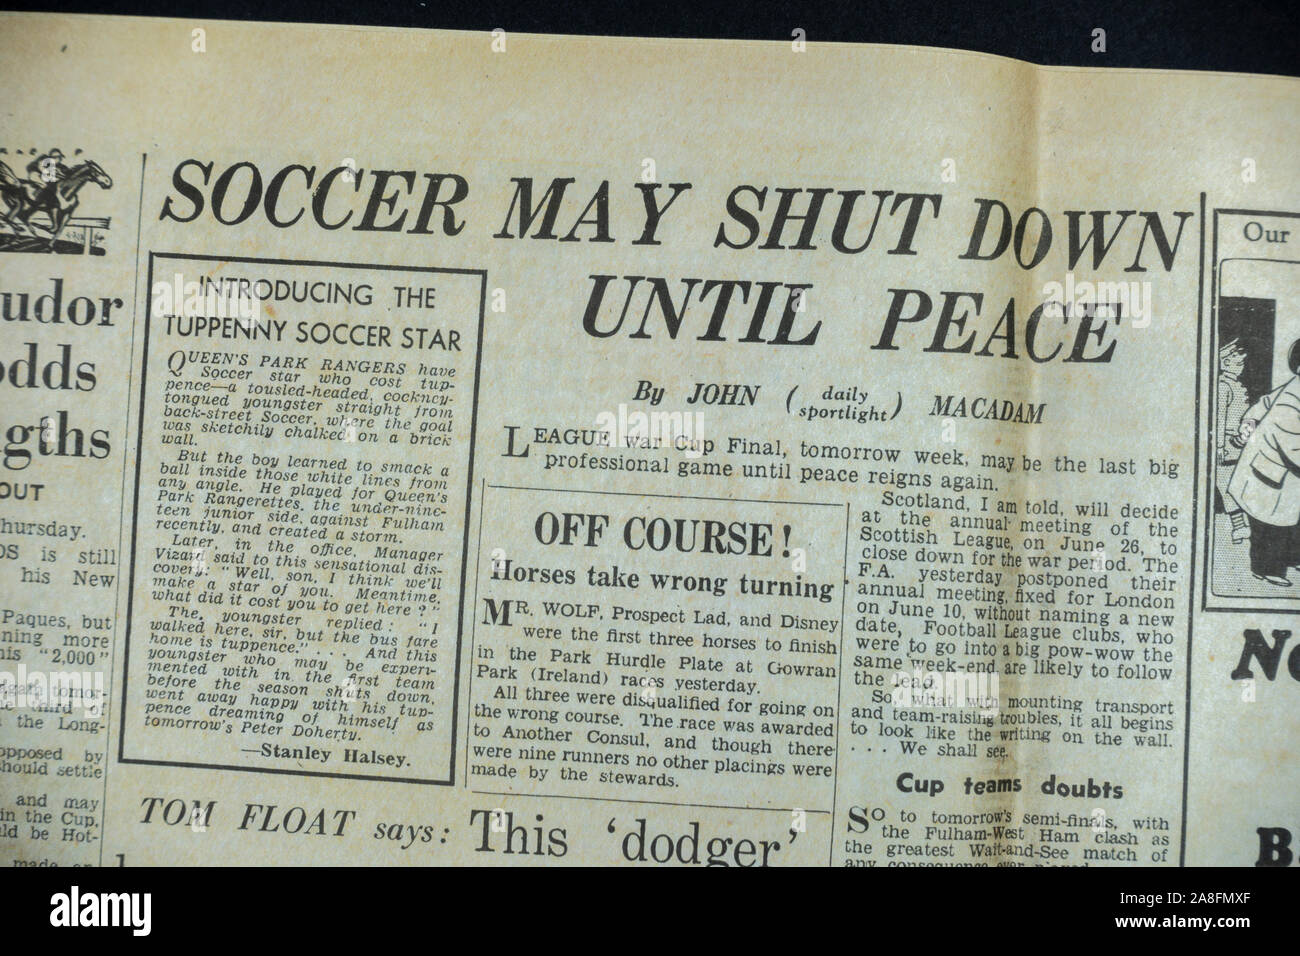 Das verkehrsforschungsprojekt möglicherweise heruntergefahren, bis Frieden" Schlagzeile in der Tageszeitung Express Zeitung (Nachbau) am 31. Mai 1940 während der Evakuierung von Dünkirchen. Stockfoto